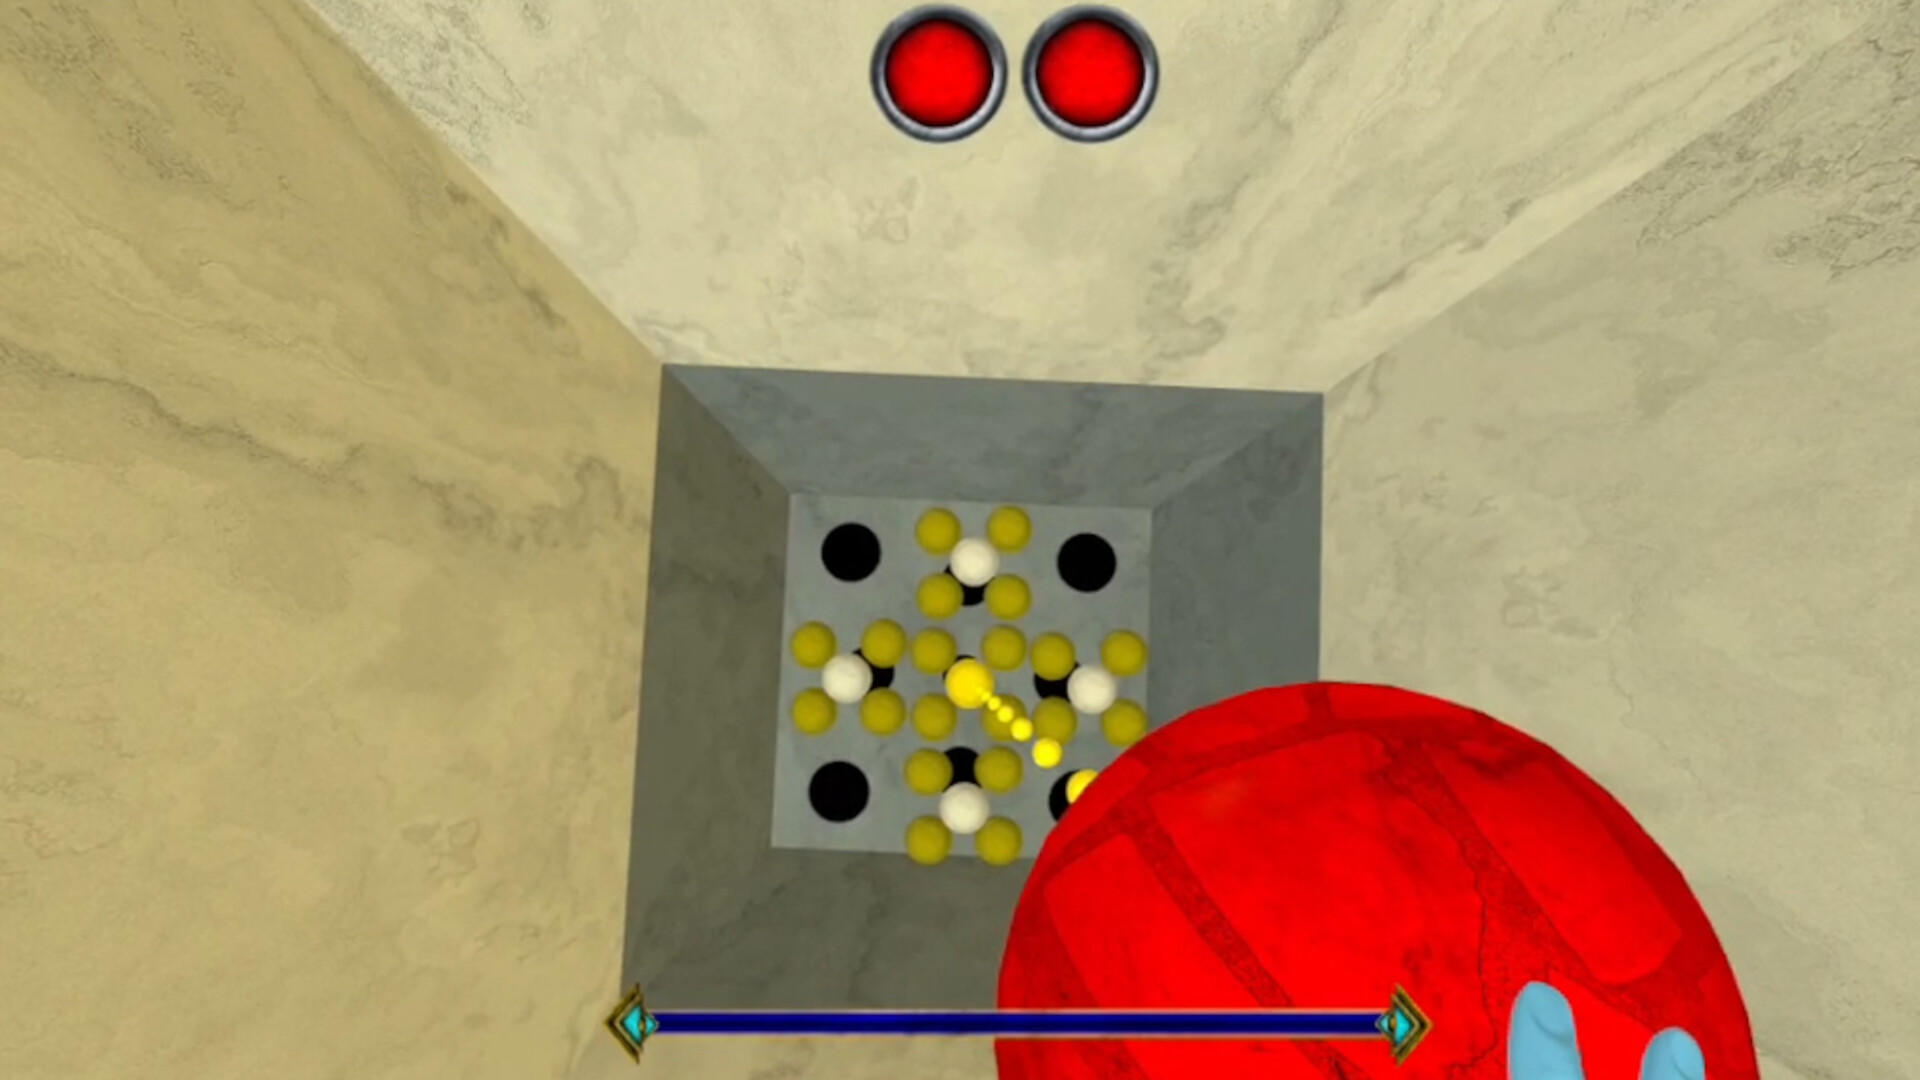 Genie Gym screenshot game